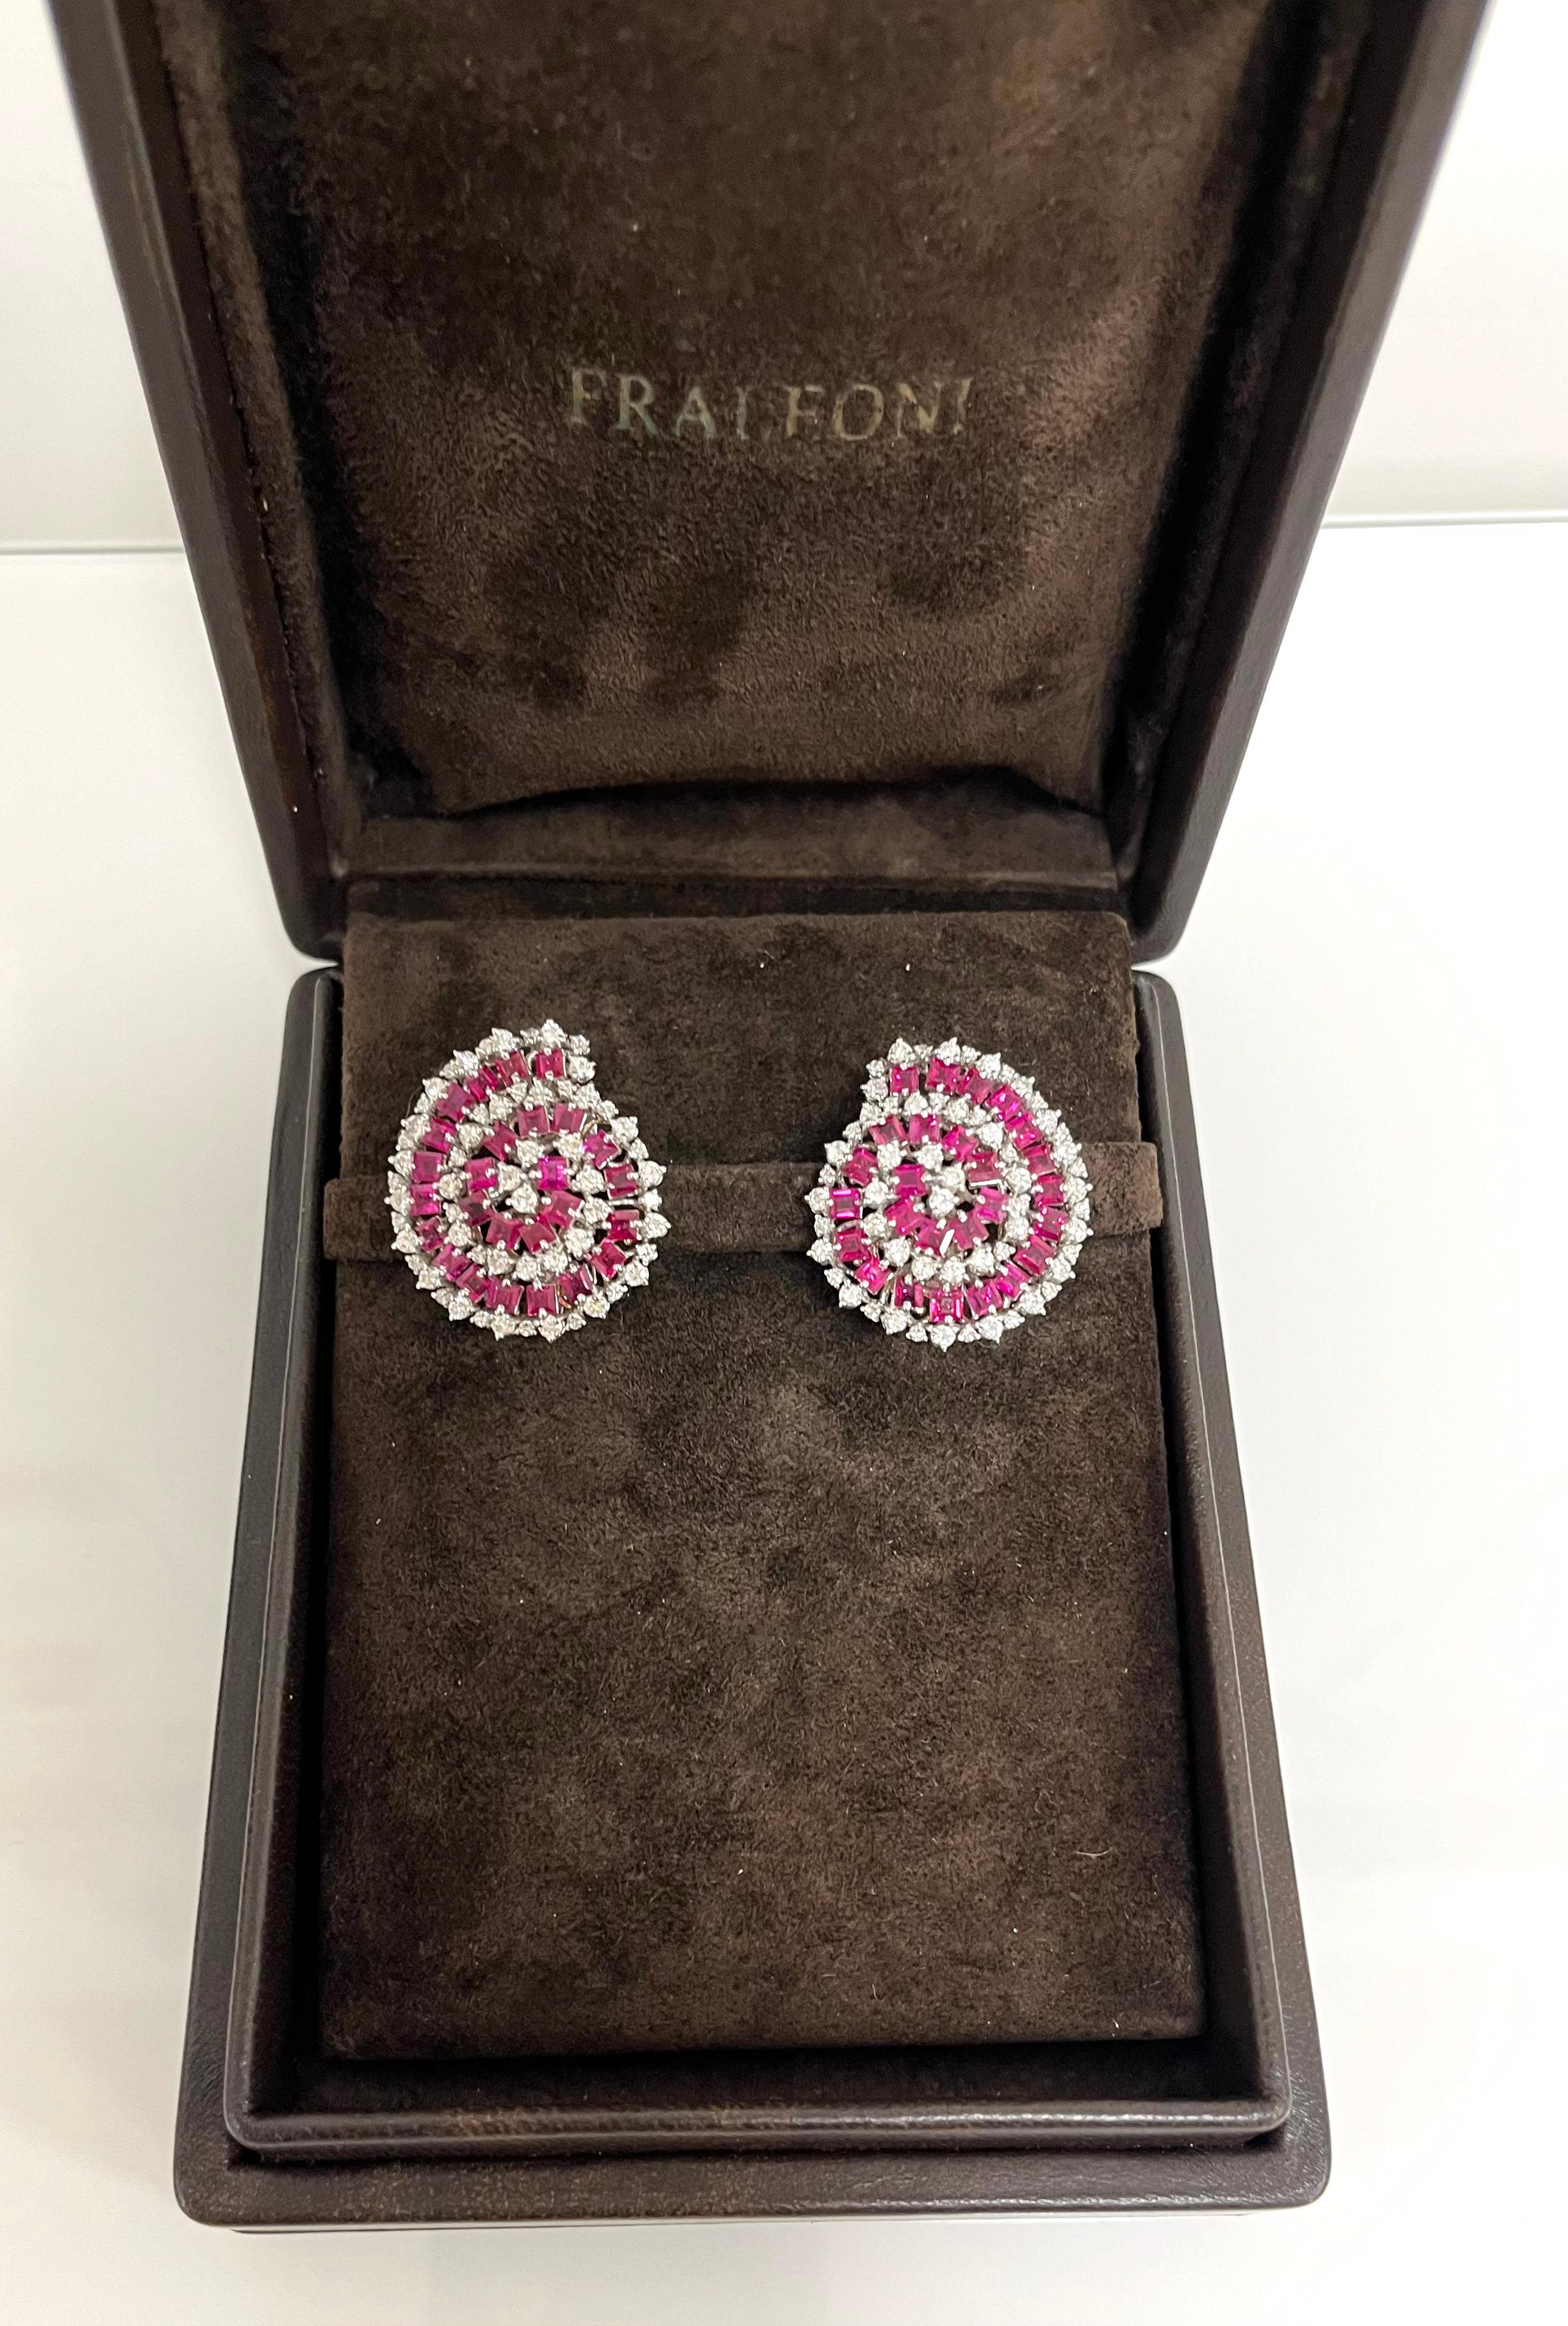 Fraleoni 18 Kt. White Gold Diamonds Rubies Clip-on Earrings For Sale 3